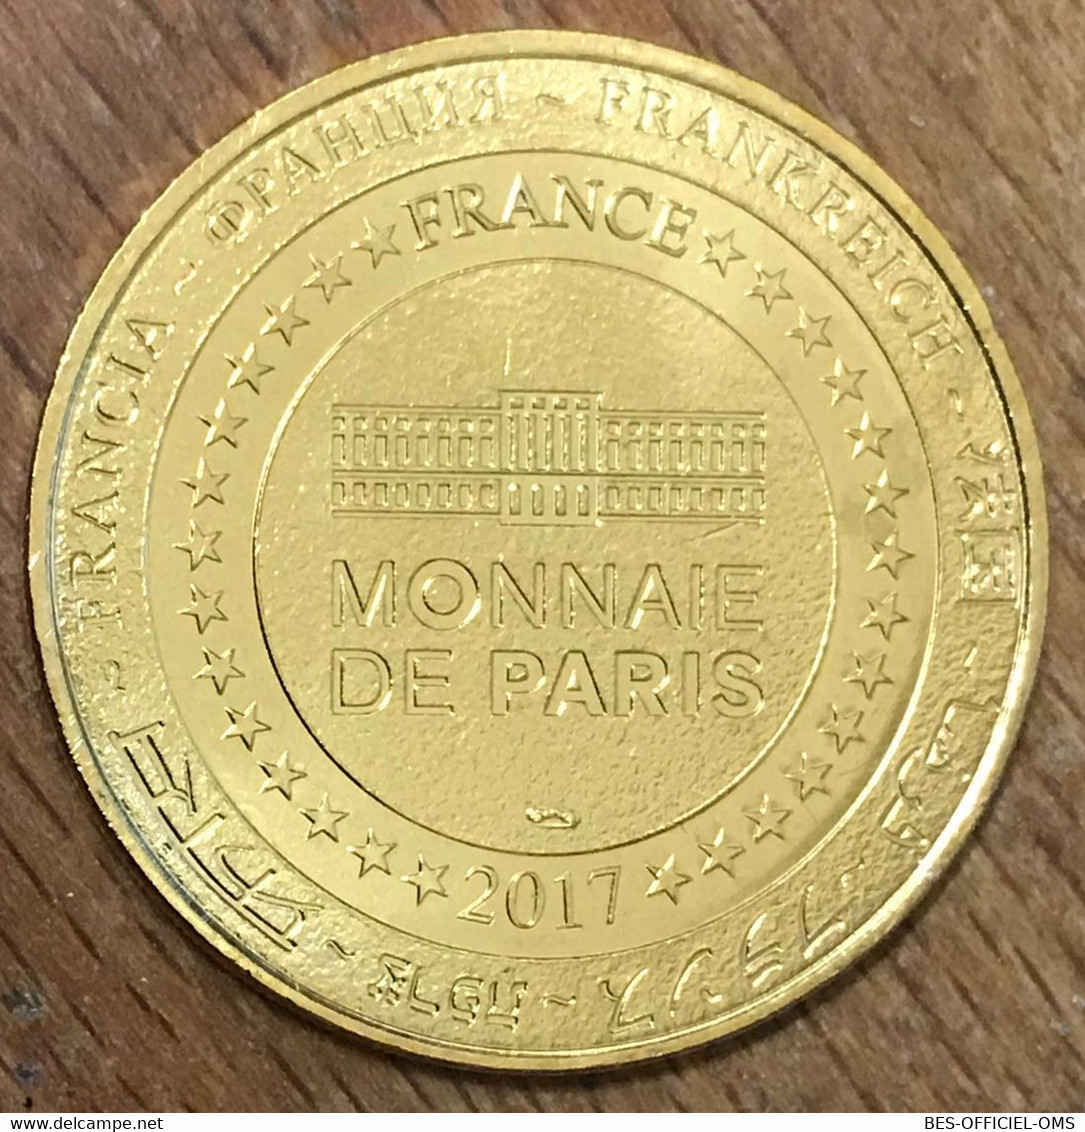 63 VULCANIA VOLCAN EN COUPE MDP 2017 MÉDAILLE SOUVENIR MONNAIE DE PARIS JETON TOURISTIQUE MEDALS COINS TOKENS - 2017